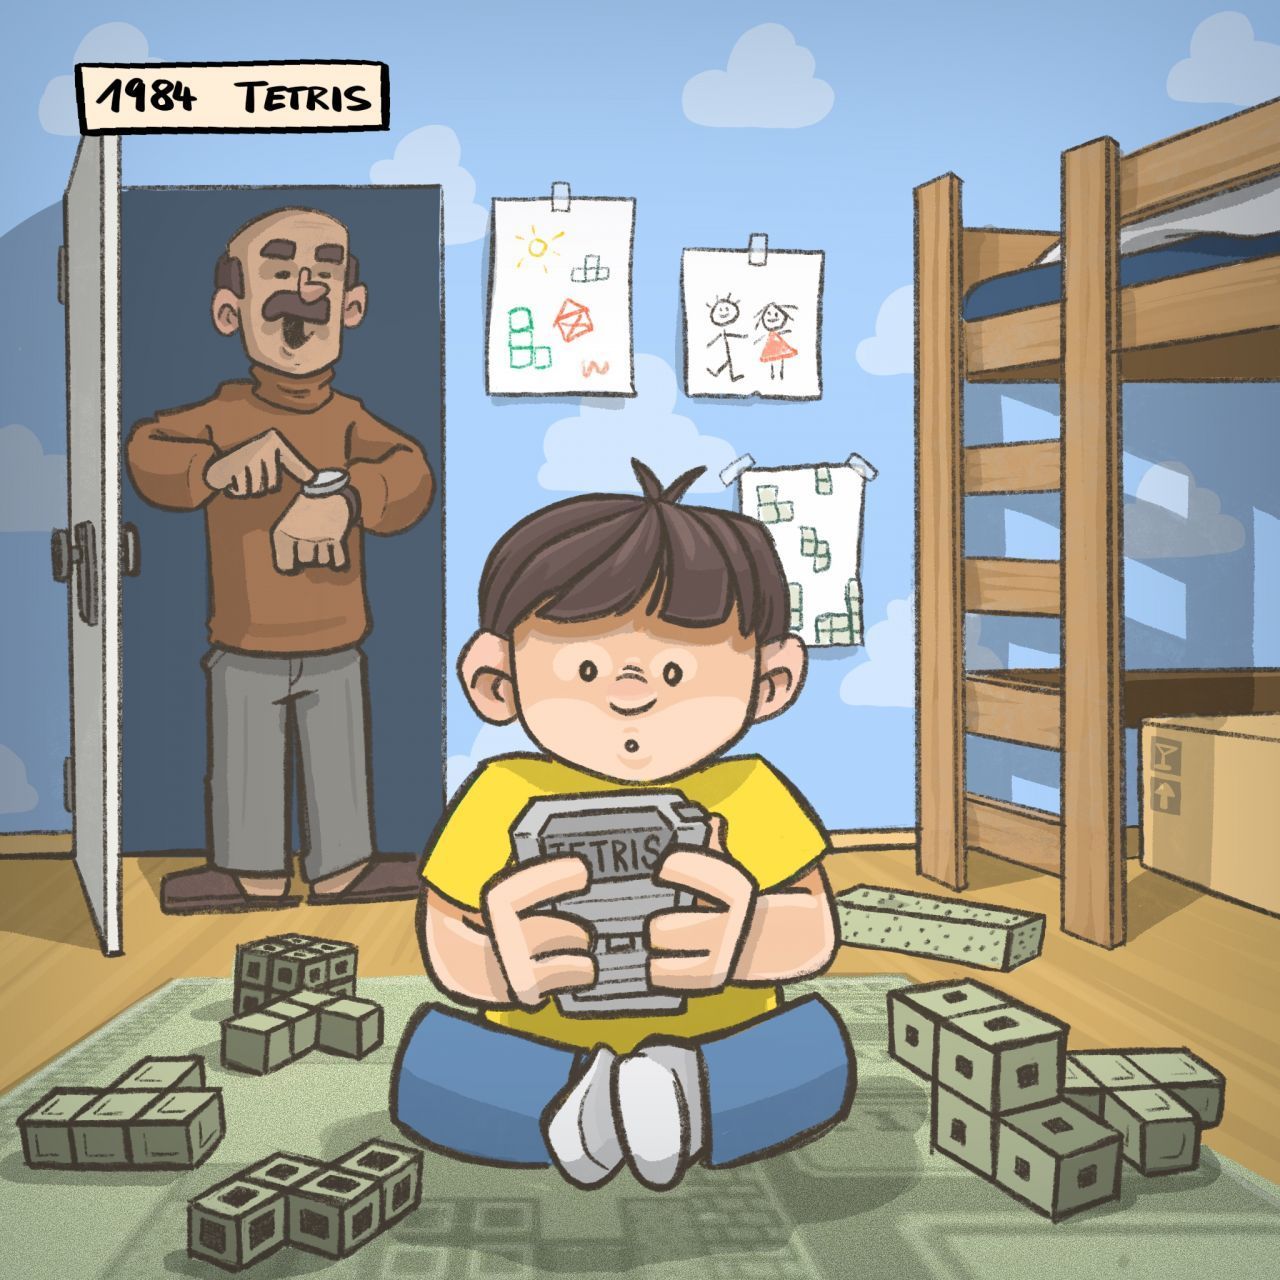 1984: 495 Millionen verkaufte Einheiten: "Tetris" ist das meistverkaufte Computerspiel aller Zeiten. Es ist aber auch faszinierend, die Steine perfekt zu stapeln.